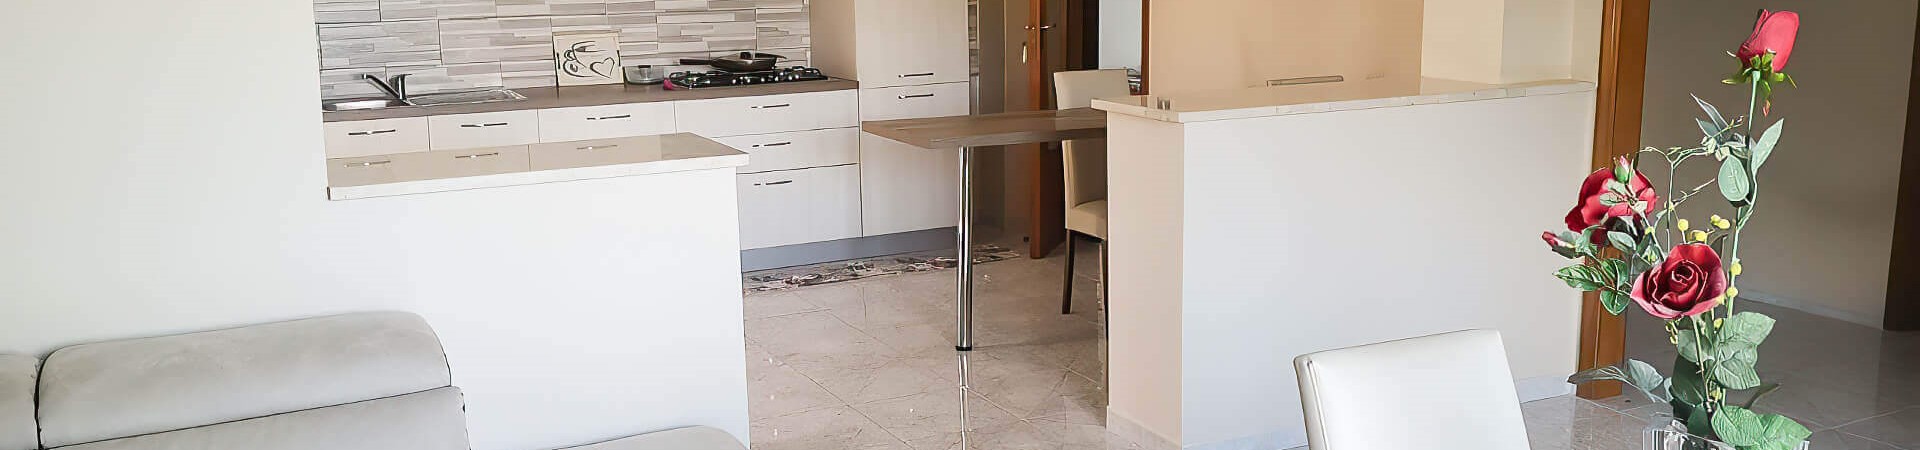 Appartamento in vendita 160 mq - 1 piano - Via Del Mare - Marano di Napoli